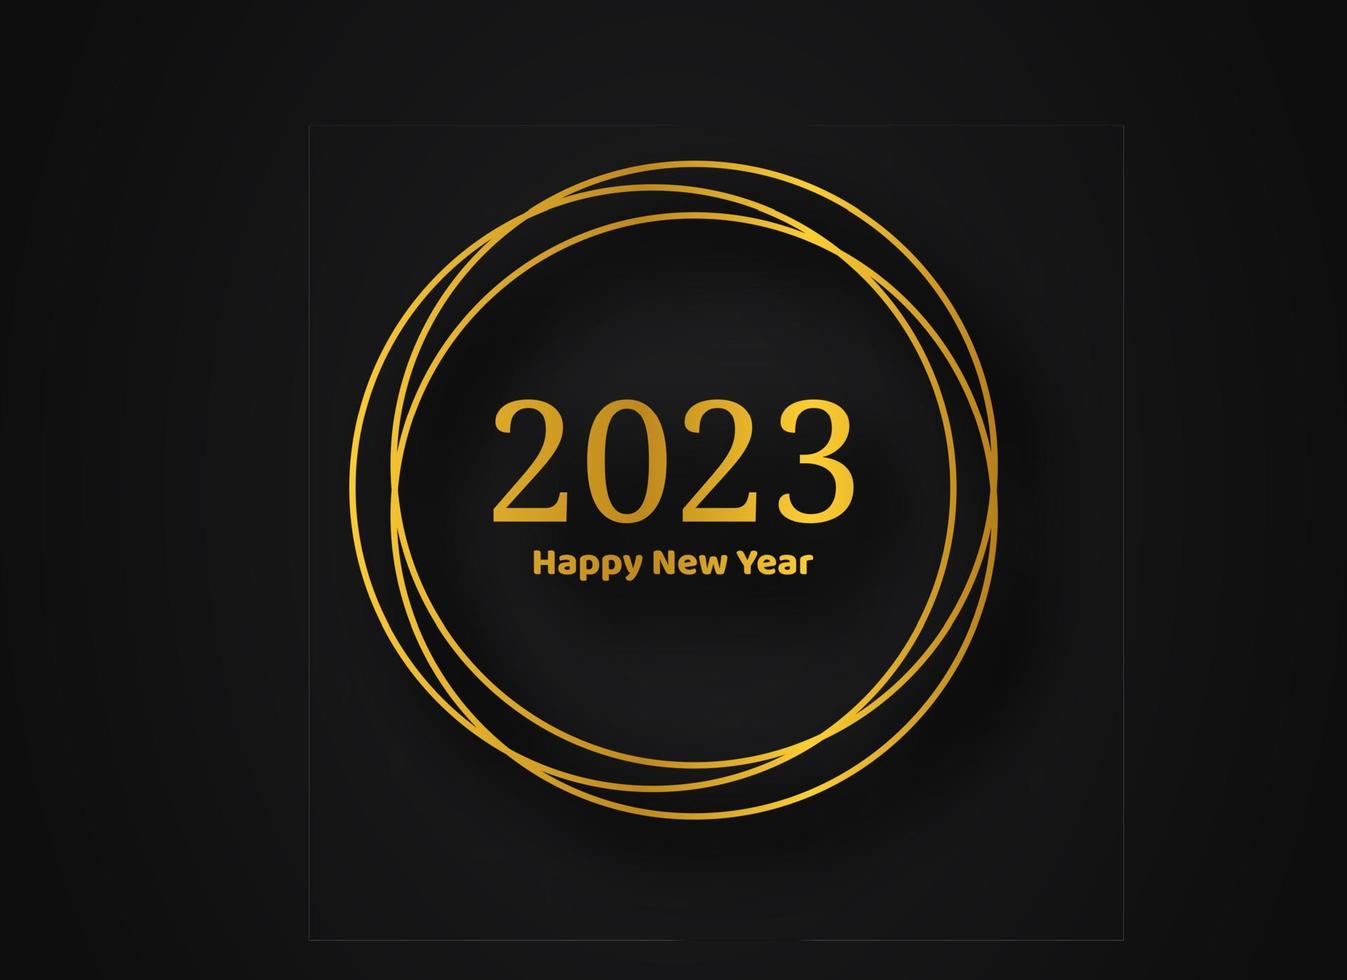 2023 feliz ano novo fundo poligonal geométrico de ouro vetor